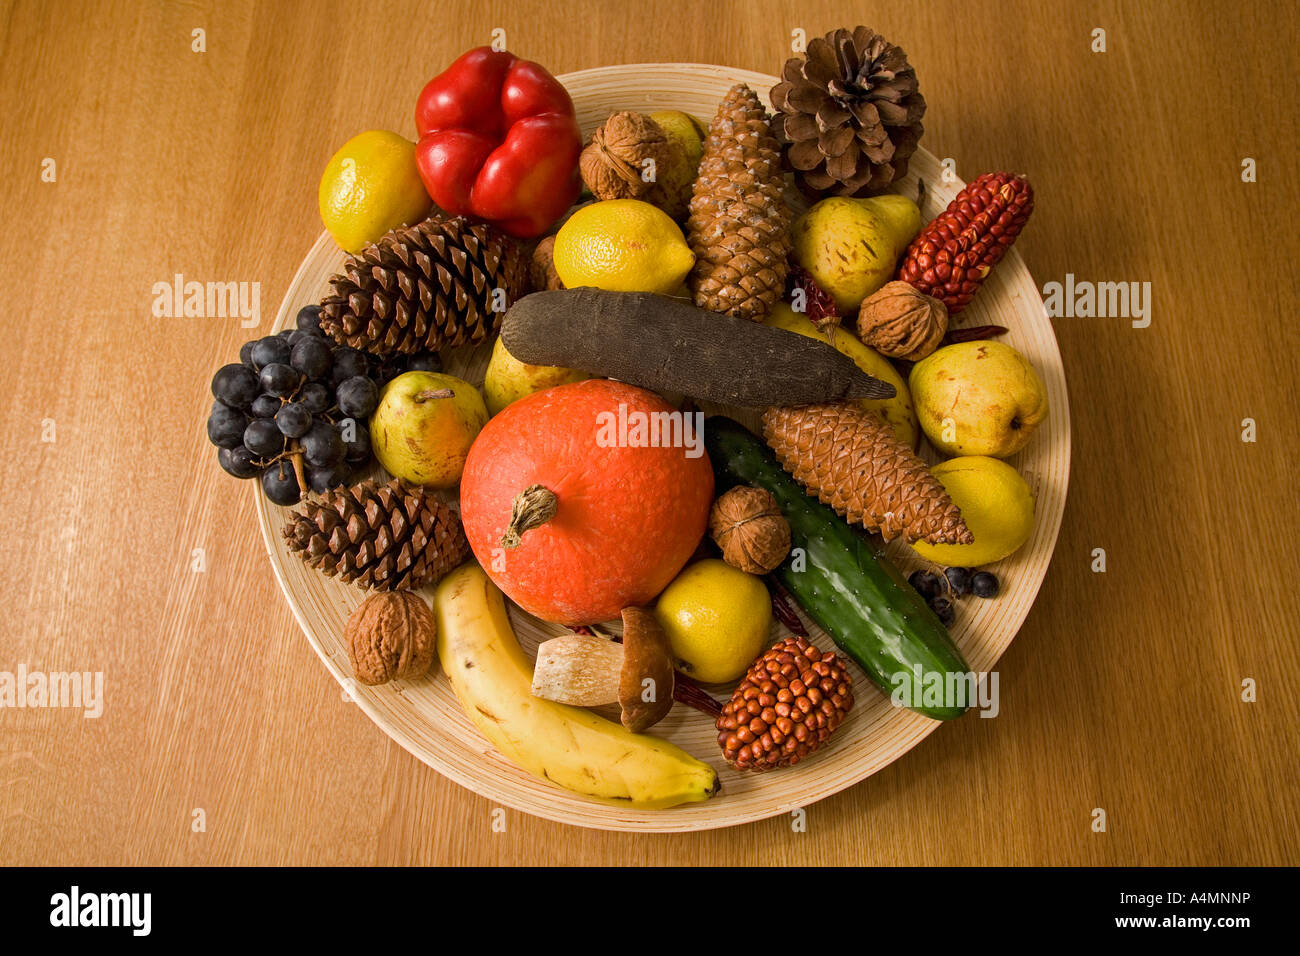 Ancora una vita: autunnale di frutta e verdura su un tavolo in legno di quercia. Nature morte: fruits et légumes d'Automne, sur une table en chêne. Foto Stock